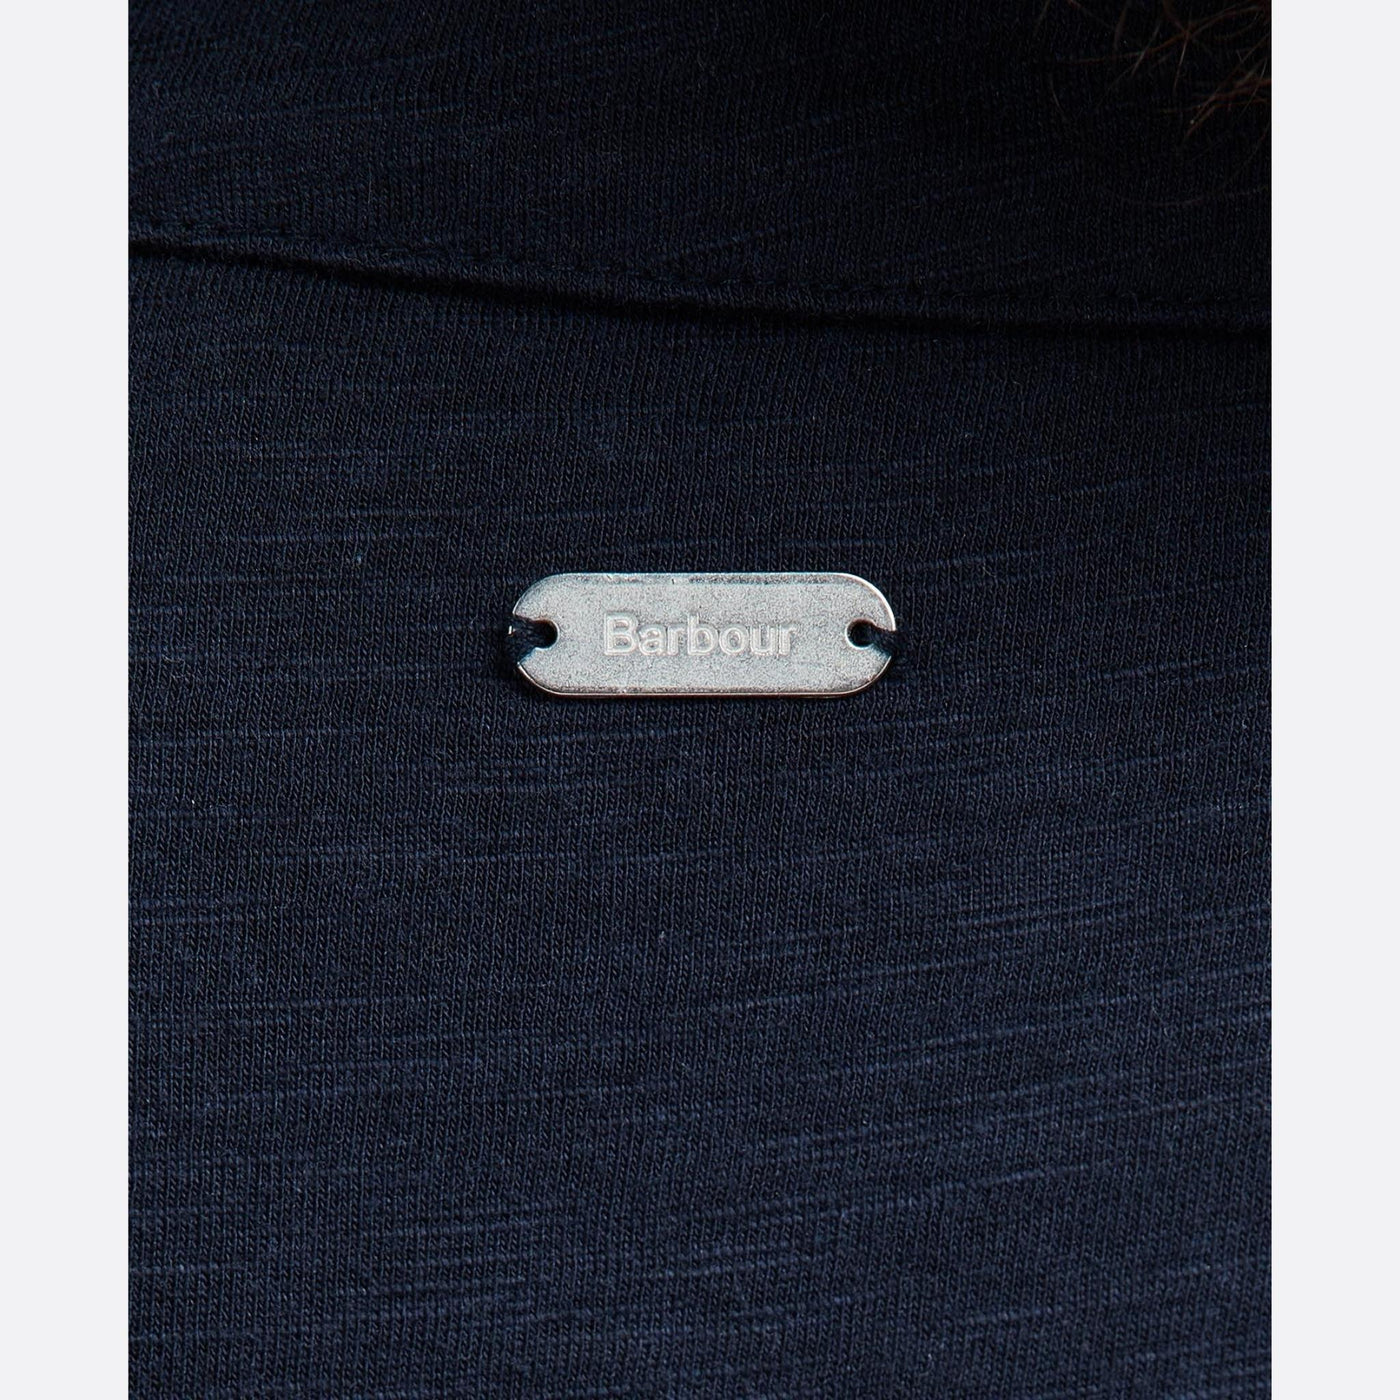 camicia donna barbour in tessuto melange blu dettaglio